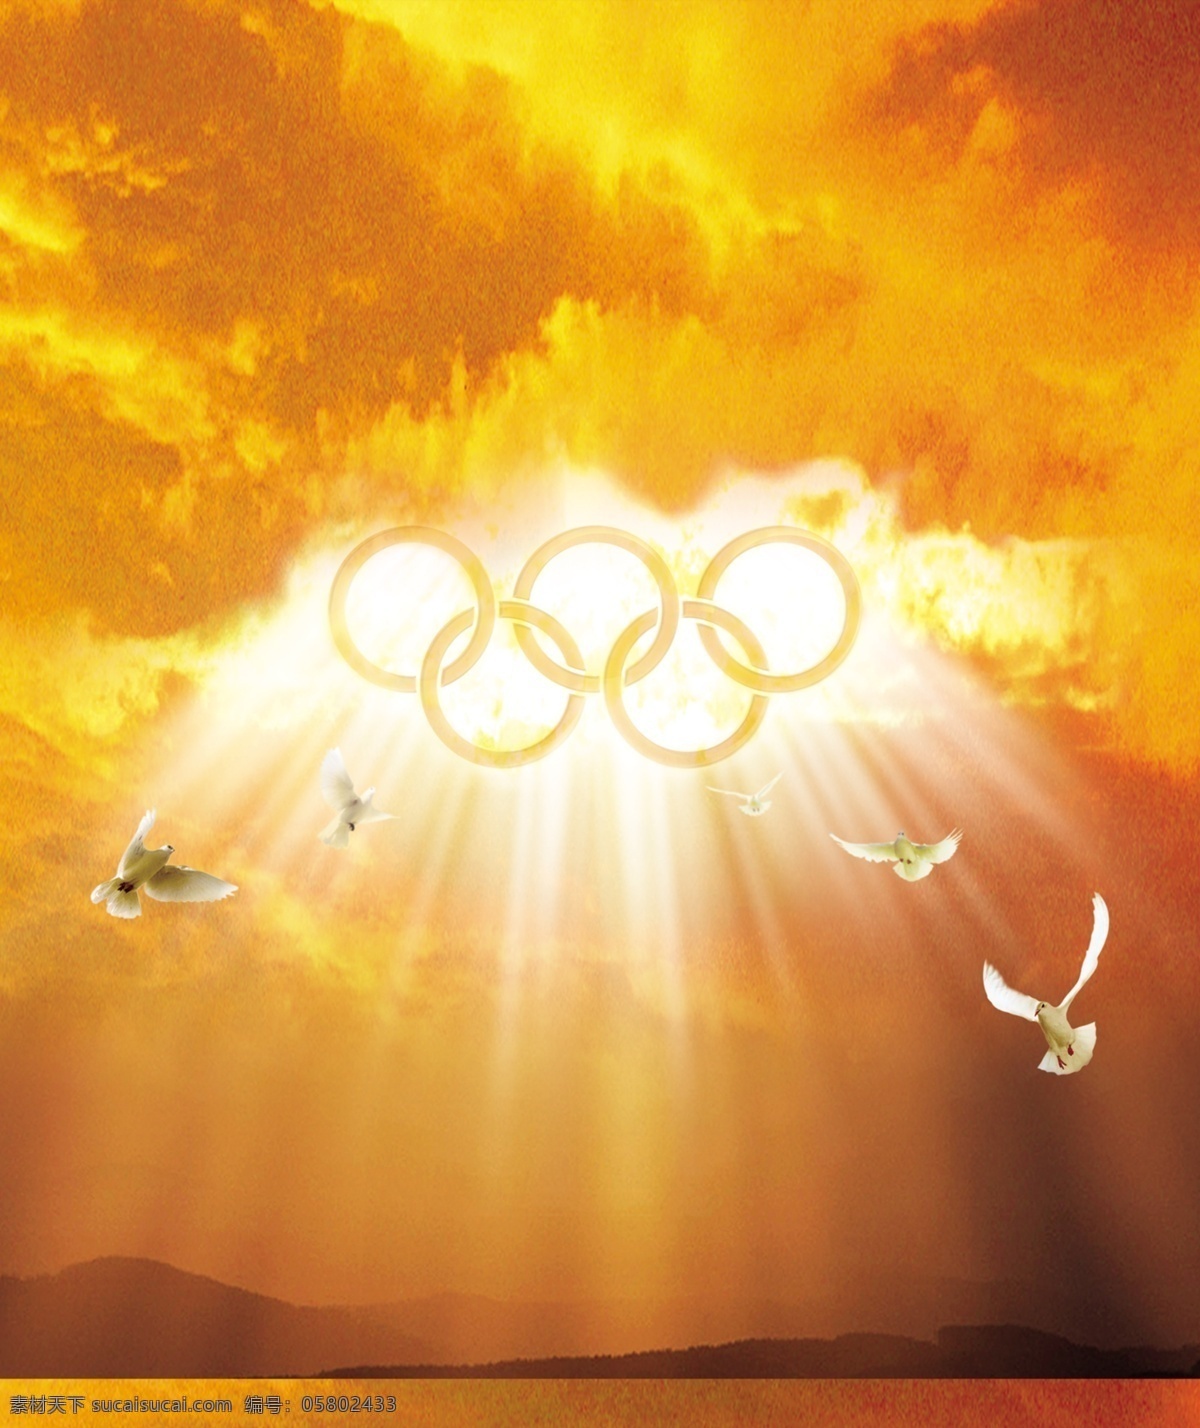 奥运五环 鸽子 五环 奥运 运动 和平鸽 世界 和平 云彩 中国 全球 封面 主页 折页 金黄色 底纹 分层